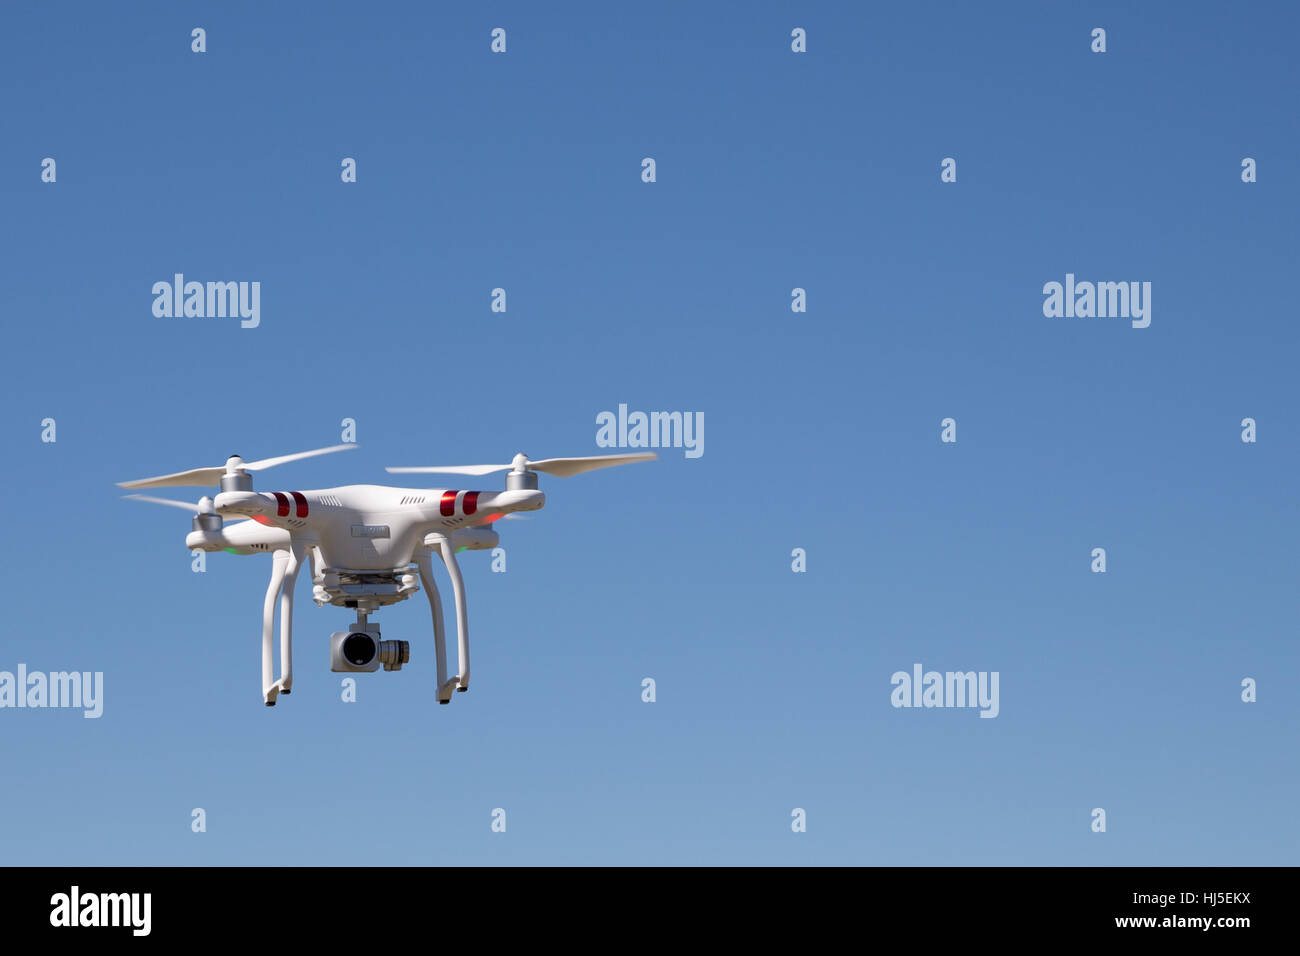 Vehículo aéreo no tripulado (UAV) o Drone contra el cielo azul brillante Foto de stock